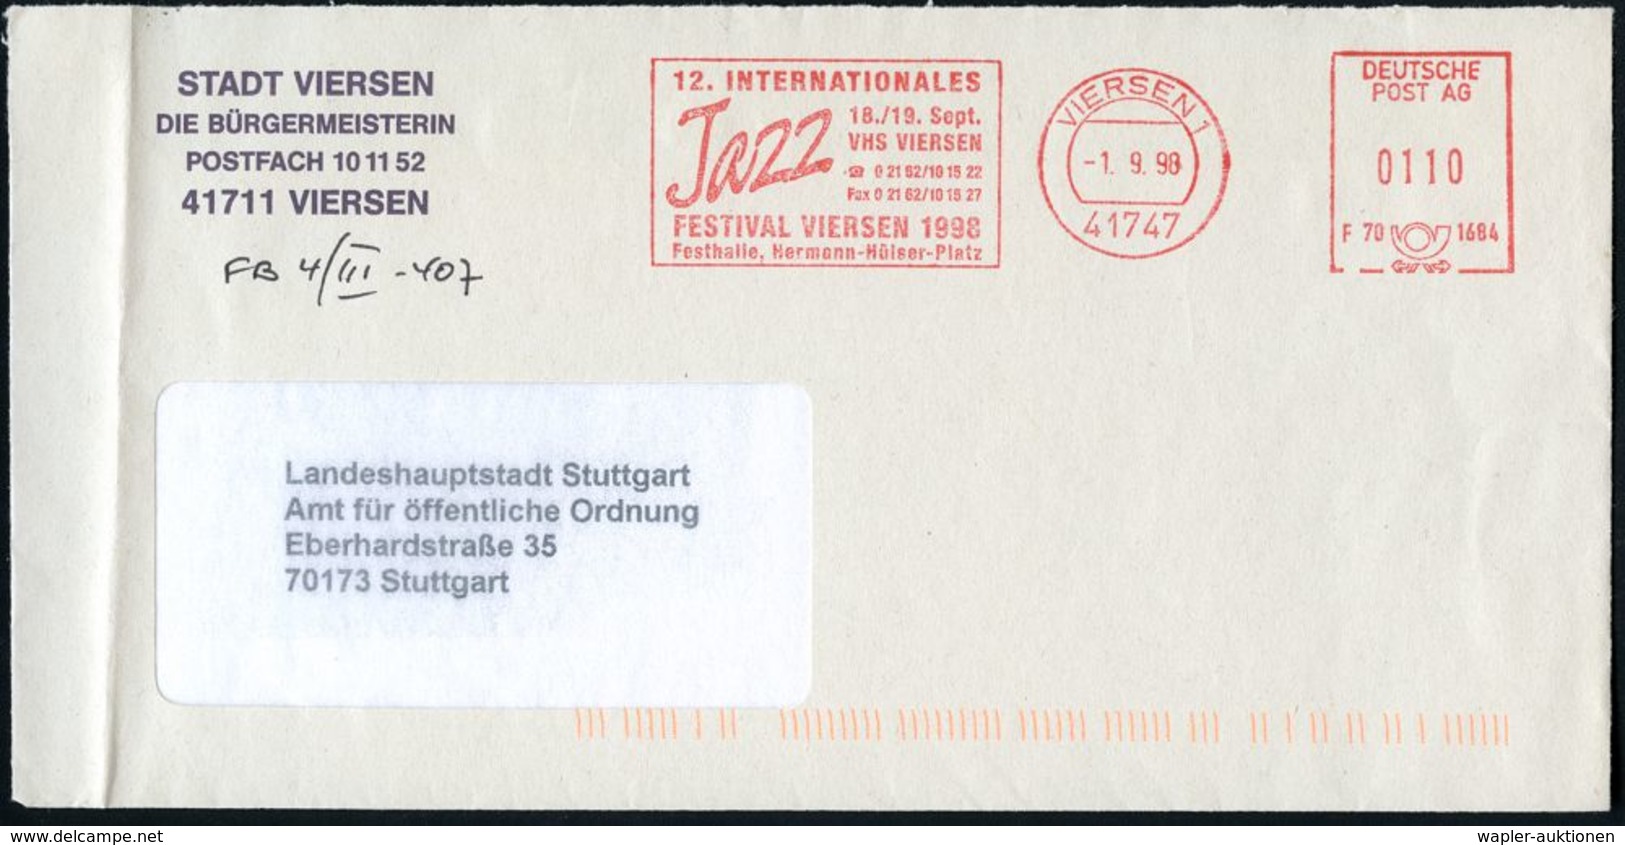 41747 VIERSEN 1/ F70 1684/ 12.INTERNAT./ Jazz/ ..FESTIVAL VIERSEN 1982.. 1998 (1.9.) Seltener AFS-Typ "DEUTSCHE POST AG" - Muziek